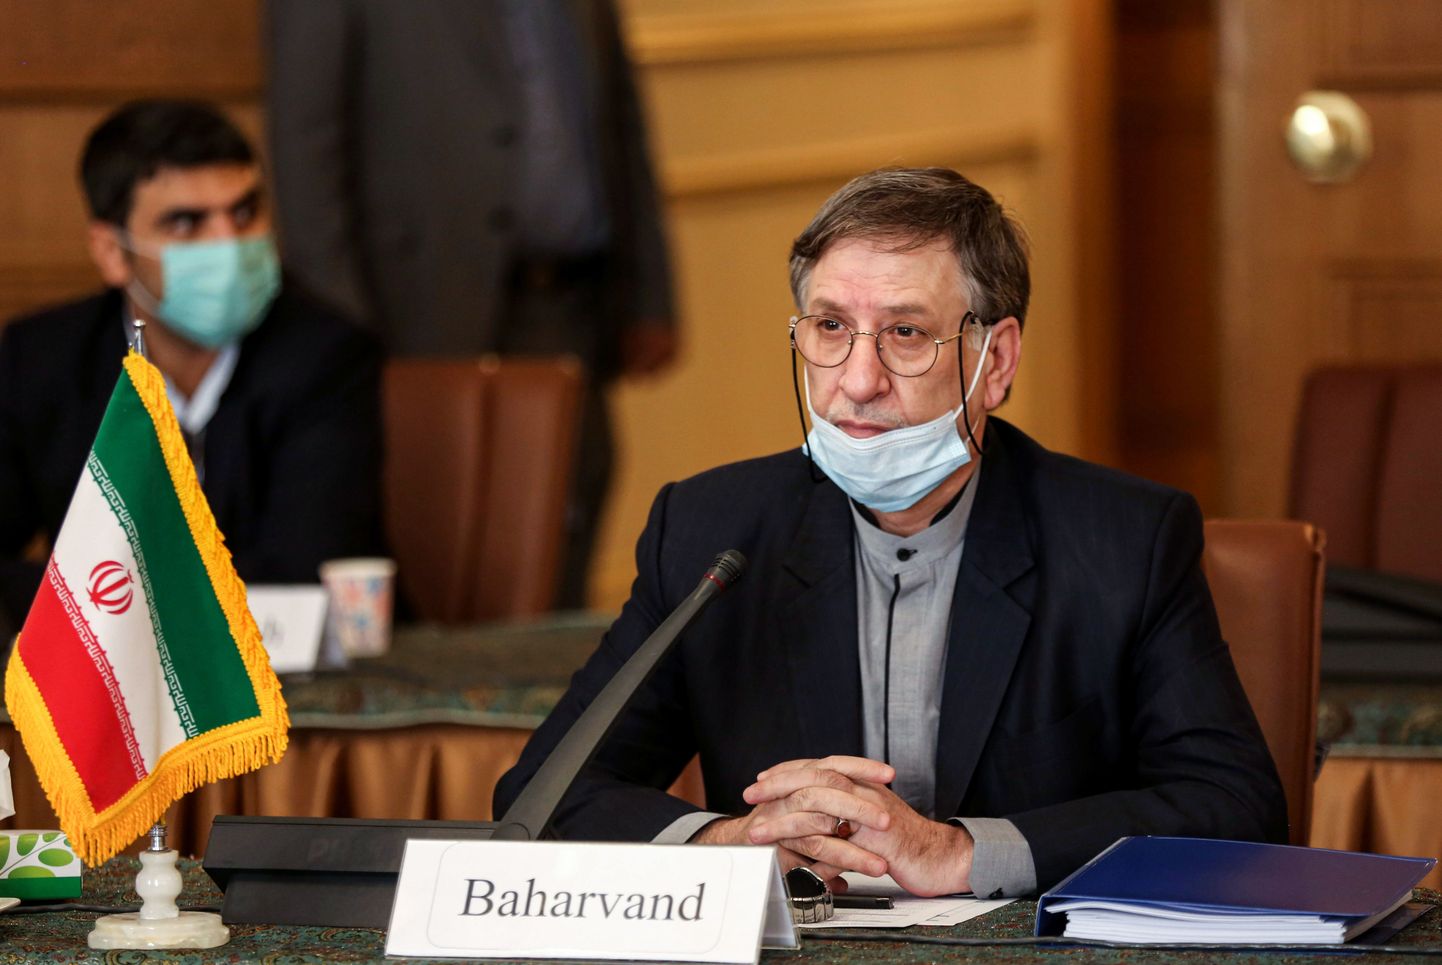 Irānas ārlietu ministra vietnieks Mohsens Baharvands tiekas ar Ukrainas valdības pārstāvjiem, lai pārrunātu kompensācijas notriektajā lidmašīnā bojā gājušo tuviniekiem